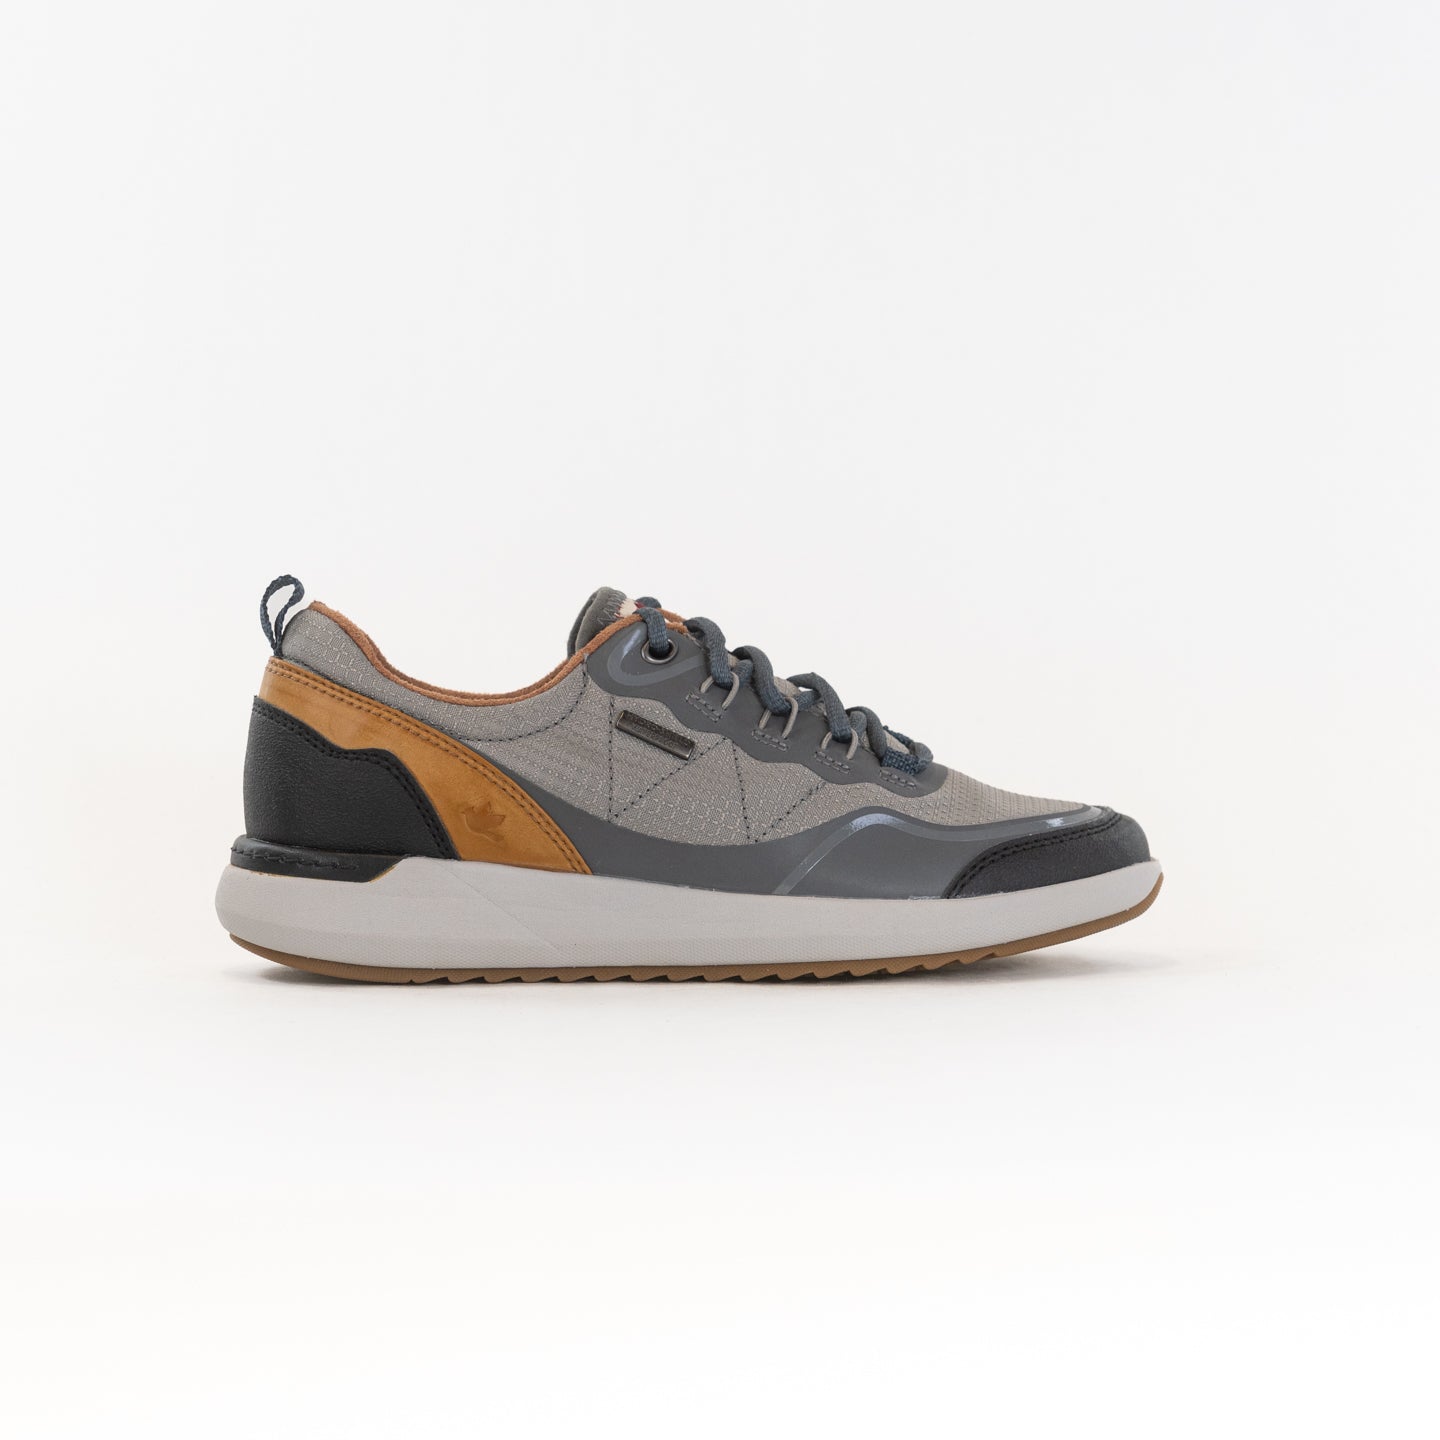 Cobb Hill Skylar Waterproof Low Lace Up Sneaker (Women's) - Grey